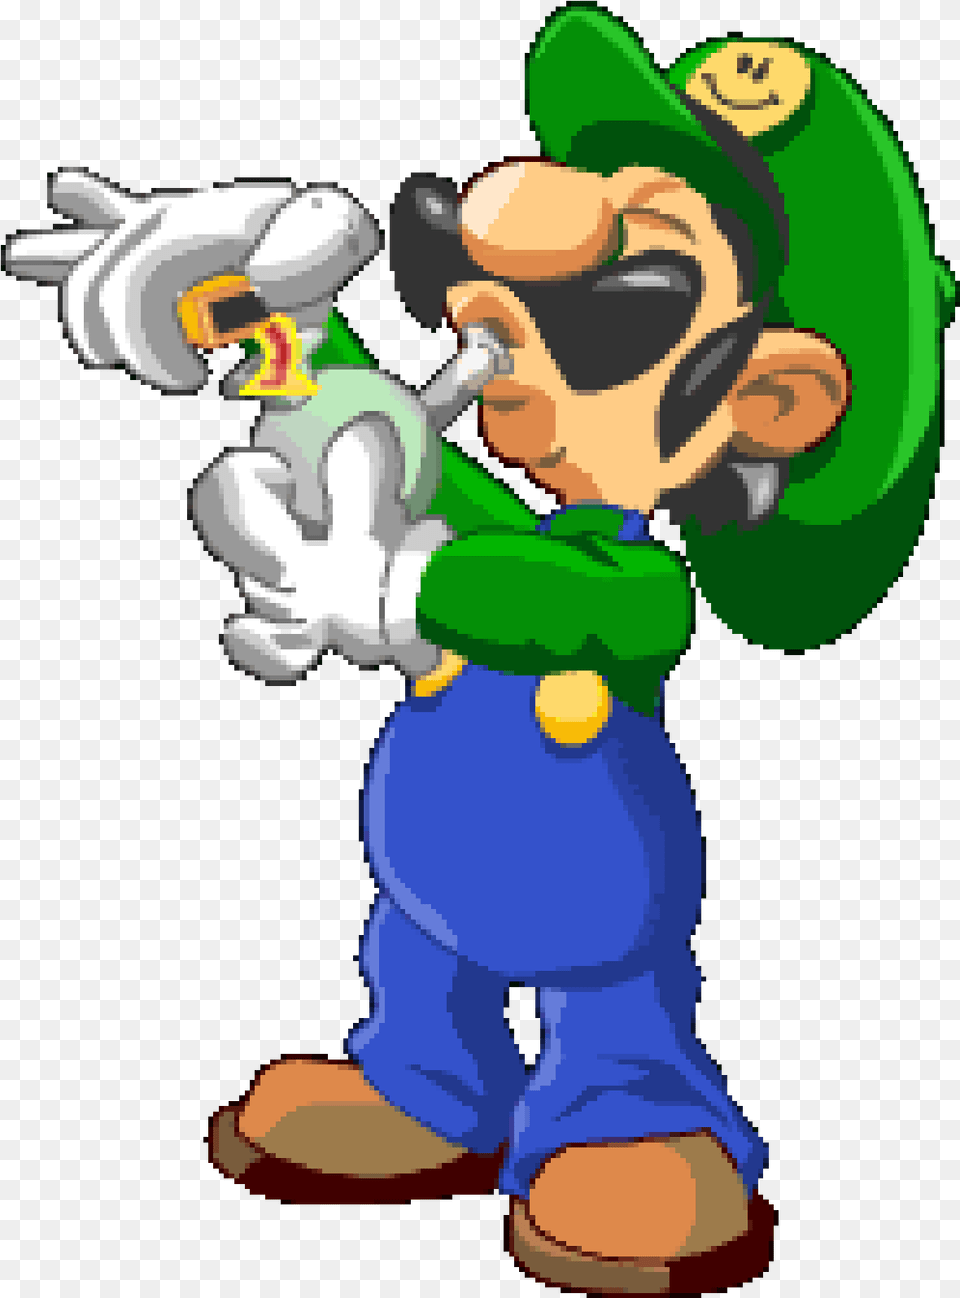 Mario Smoking Weed For Imagenes De Mario Bros Marihuano, Baby, Person, Game, Super Mario Free Transparent Png